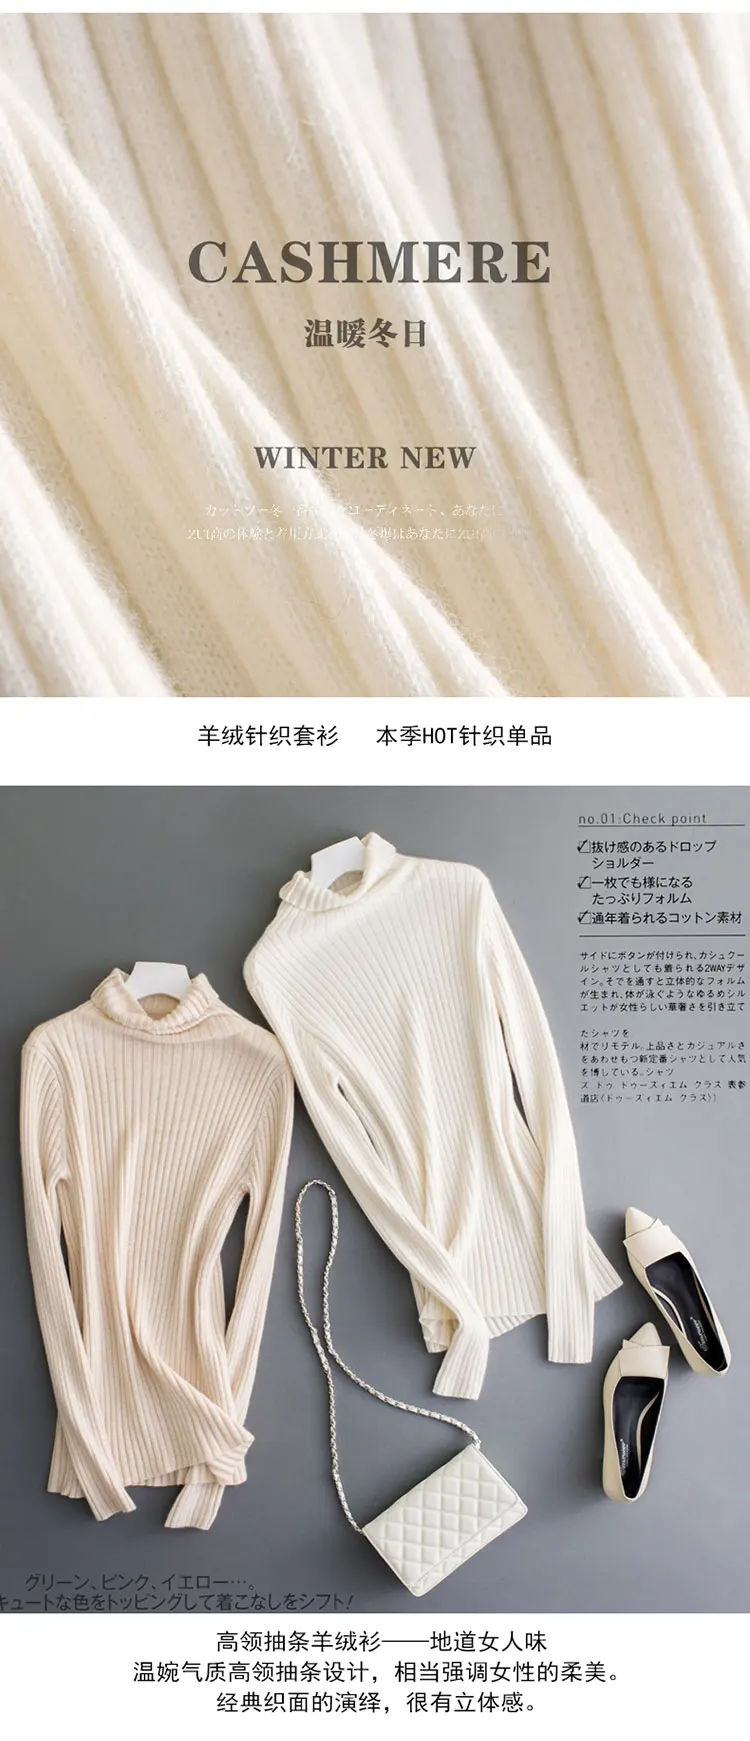 Кашемировый свитер осень зима женский чистый кашемир шерсть вертикальная полоска вязаный тонкий свитер пуловер